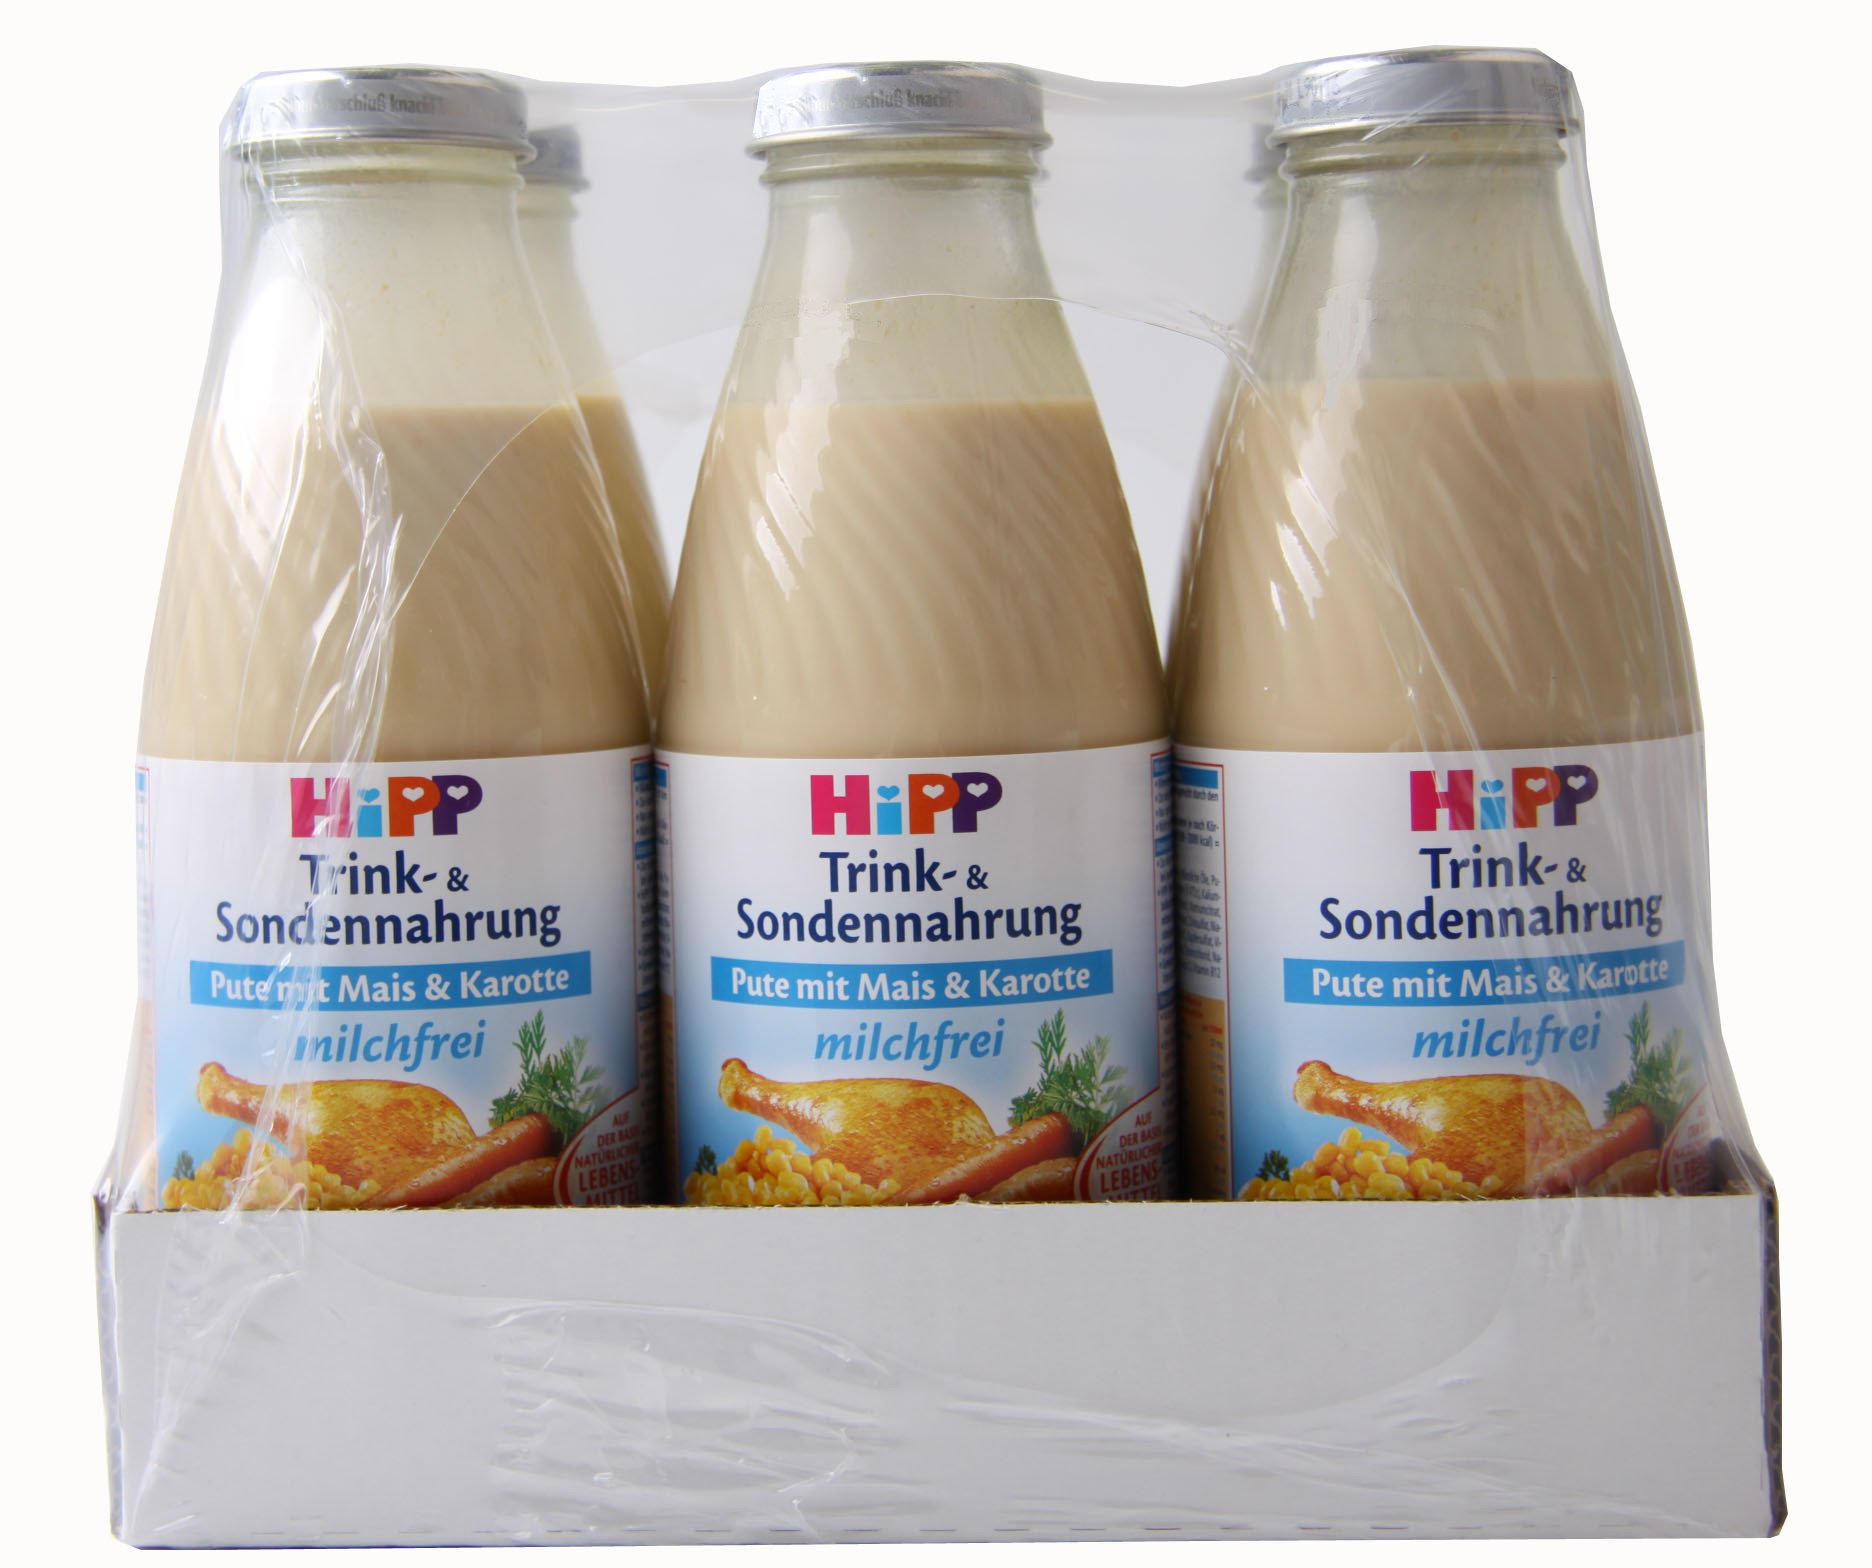 Hipp Trink- u. Sondennahrung Pute mit Mais & Karotte, 500 ml - ohne Milch - 12 Flaschen